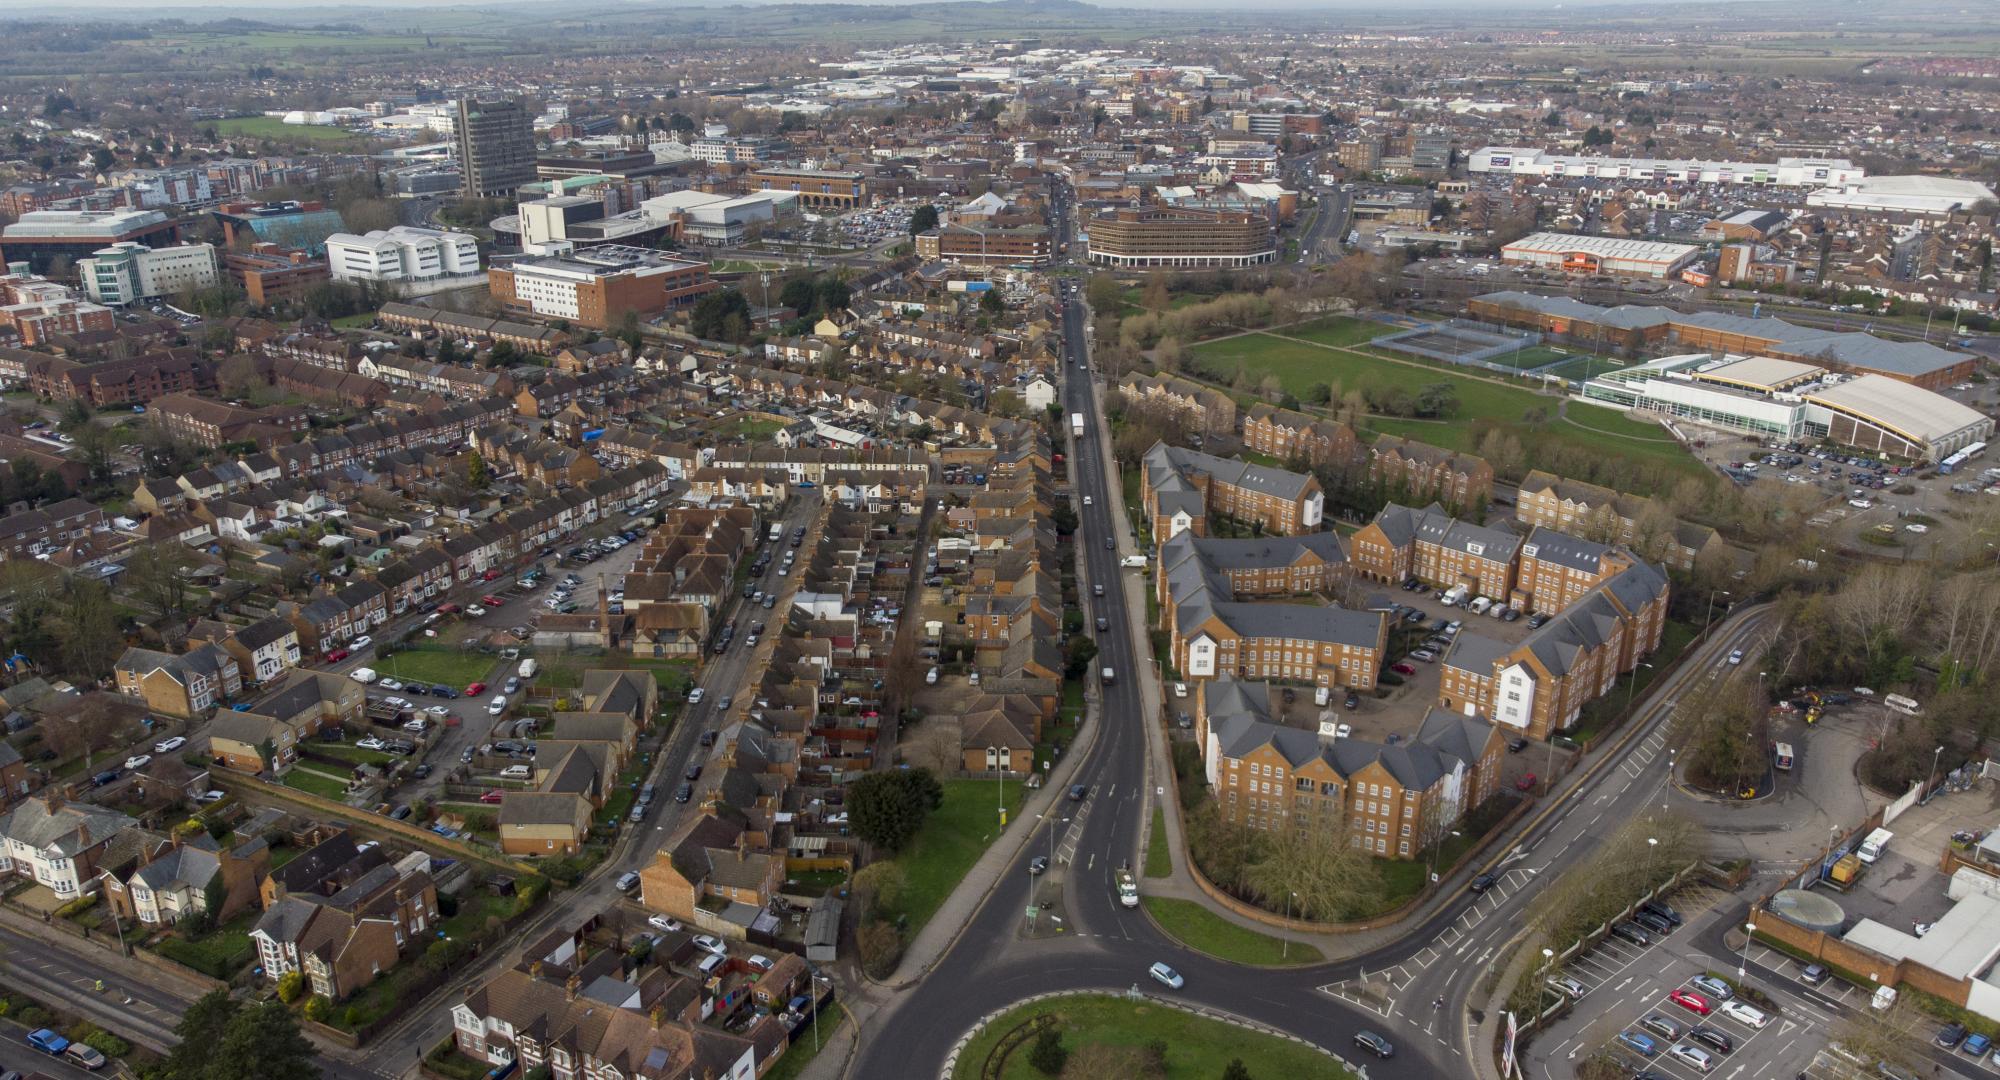 Aerial photo of Aylesbury, UK